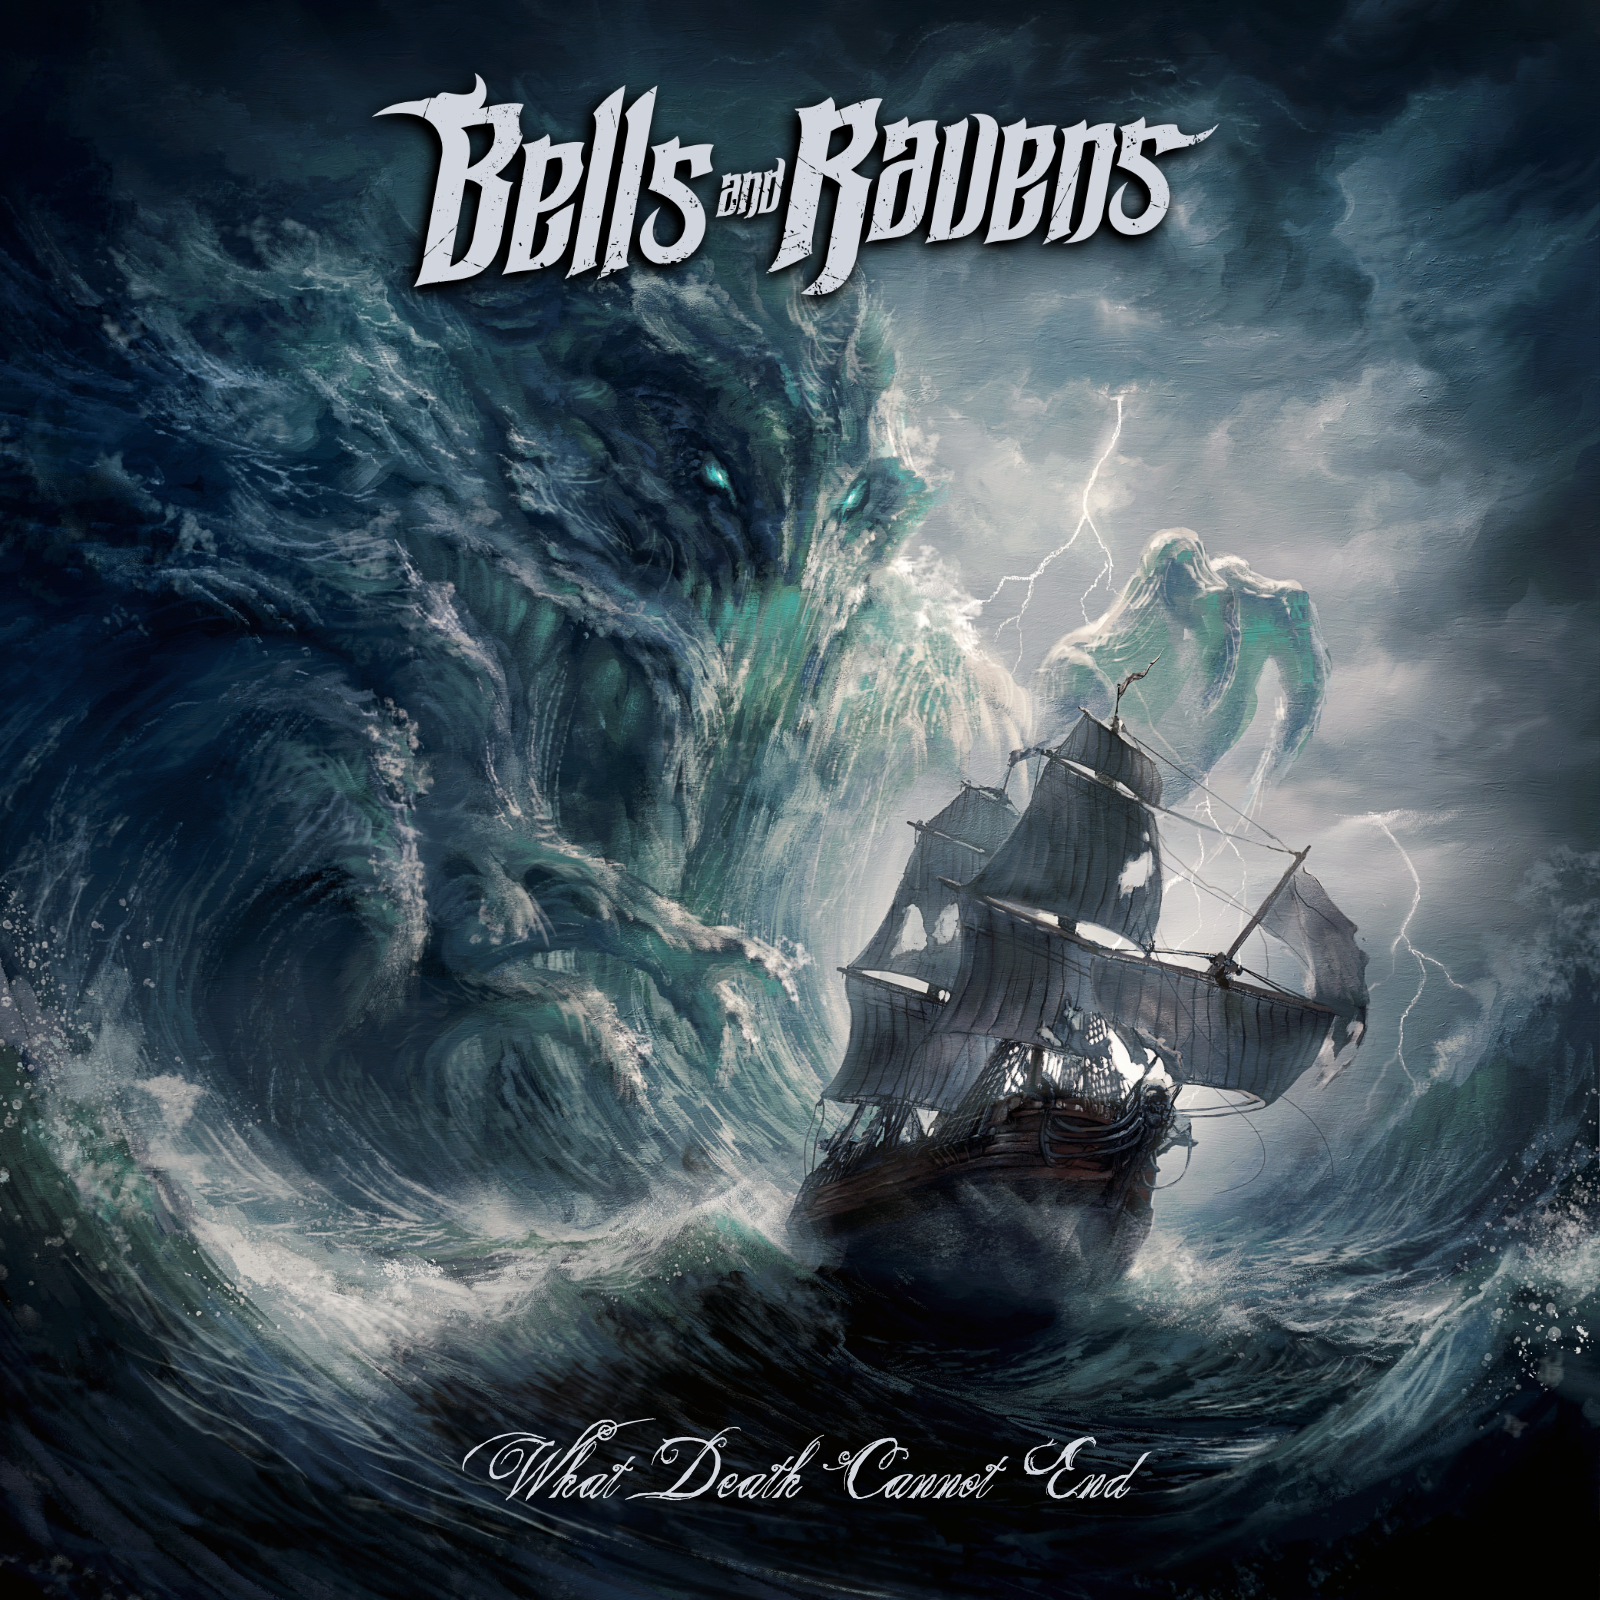 bells-and-ravens-zweites-album-what-death-cannot-end-mit-zak-stevens-und-tim-ripper-owens-veroeffentlicht